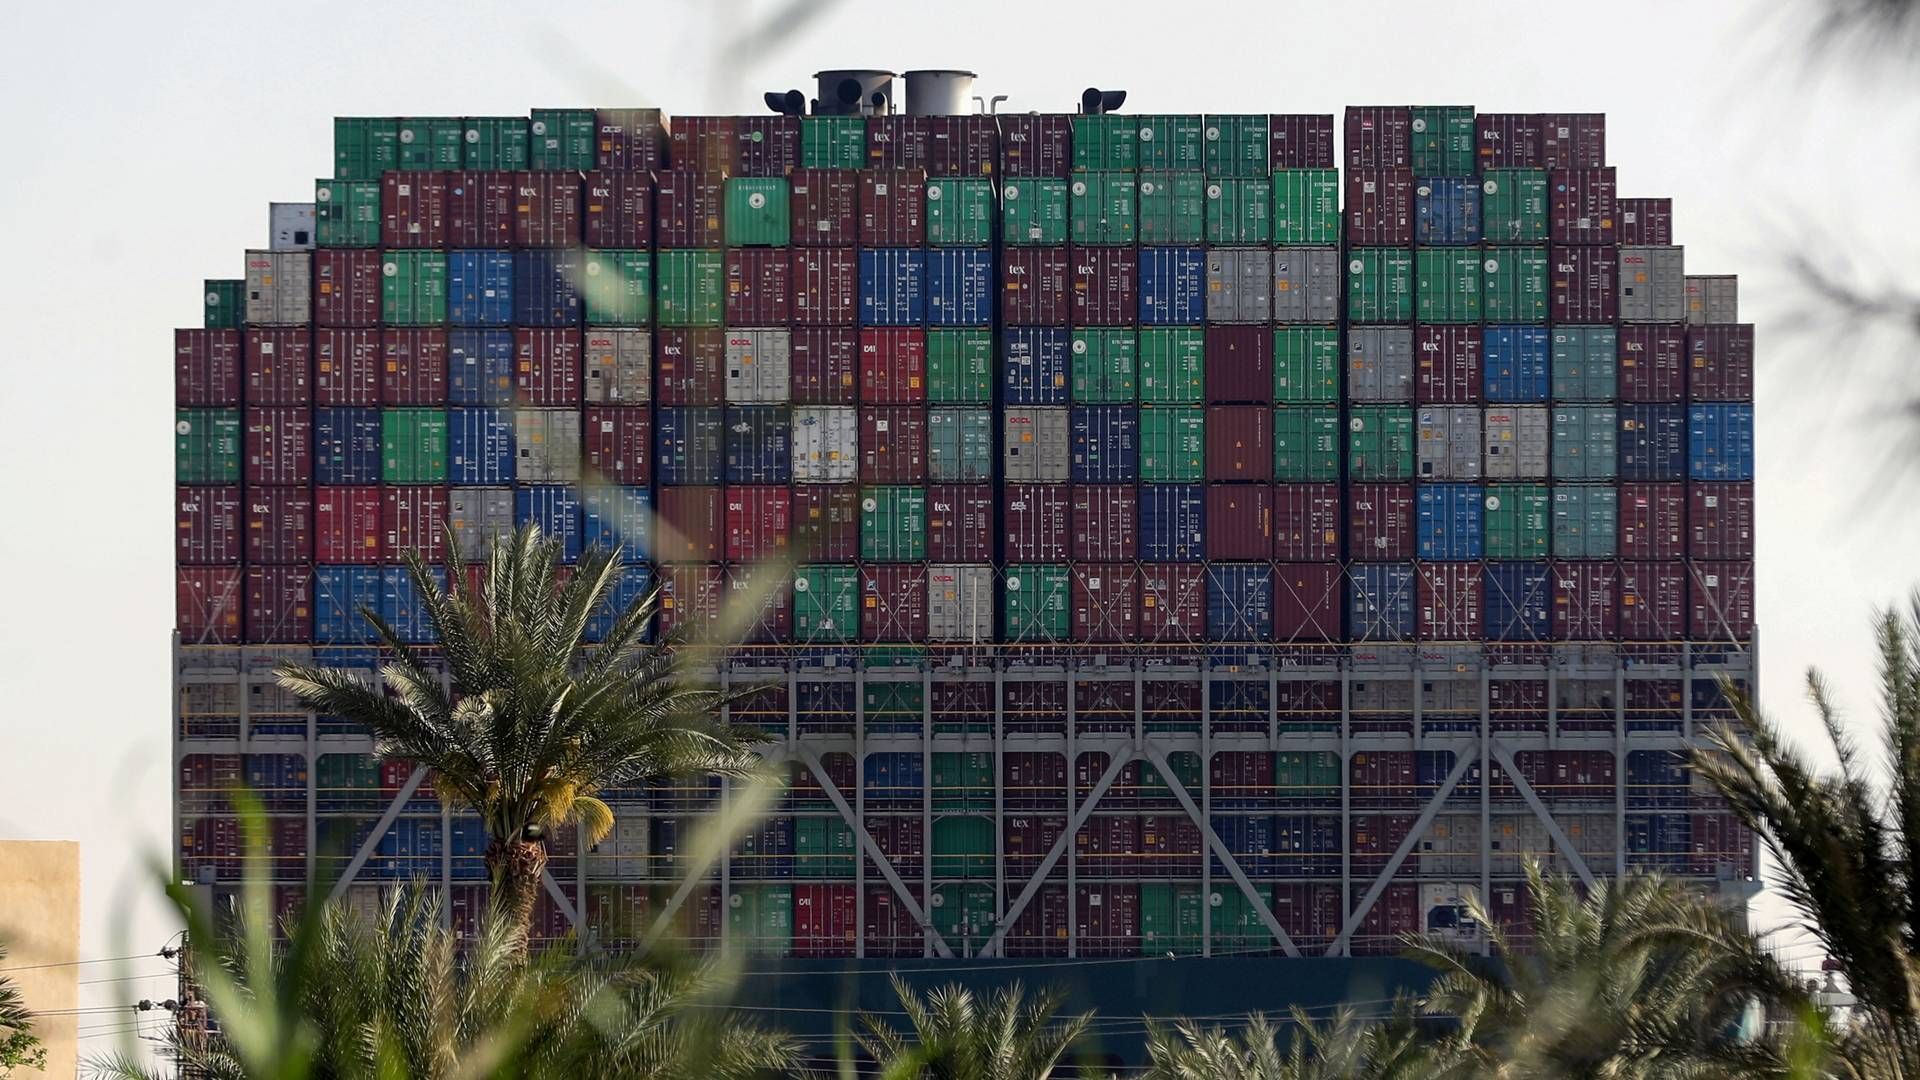 Containere ombord på skibet Ever Given, der er strandet i Suez-kanalen. | Foto: Mohamed Abd El Ghany/REUTERS / X02738